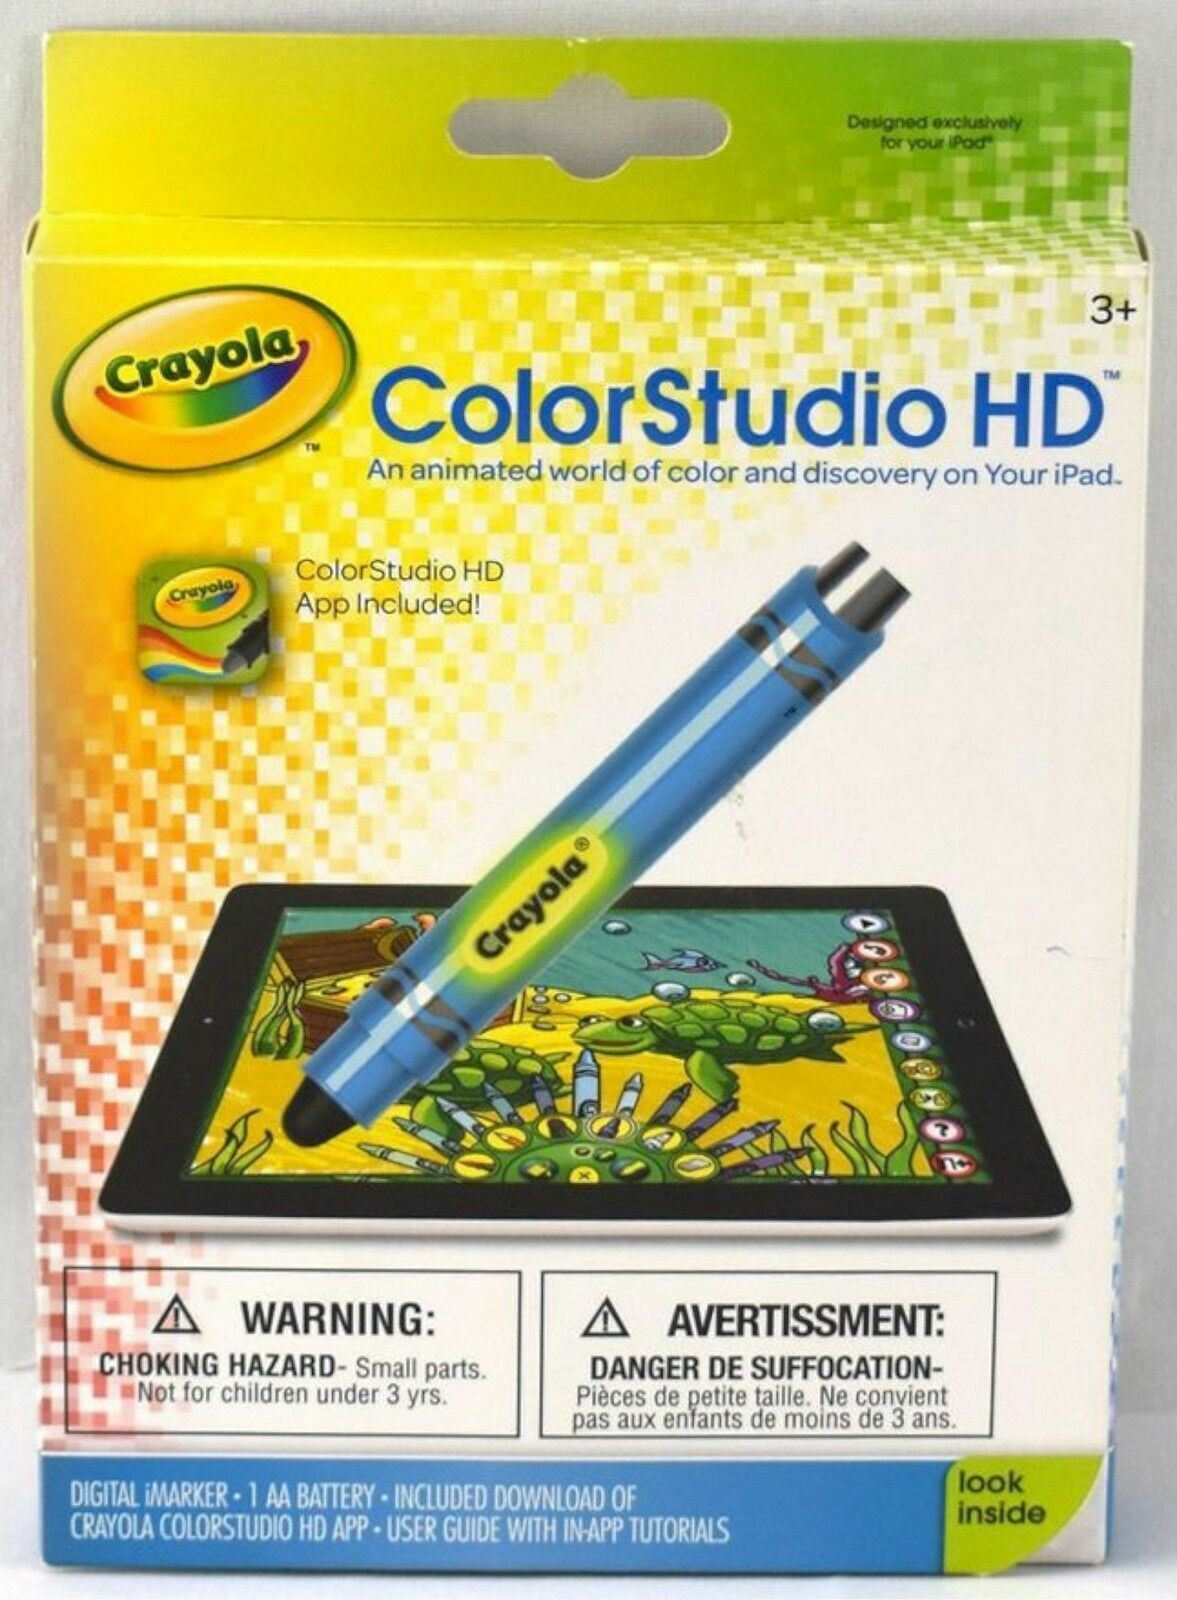 NEW Crayola/Griffin ColorStudio HD Stylus & App for Apple iPad crayon color pen